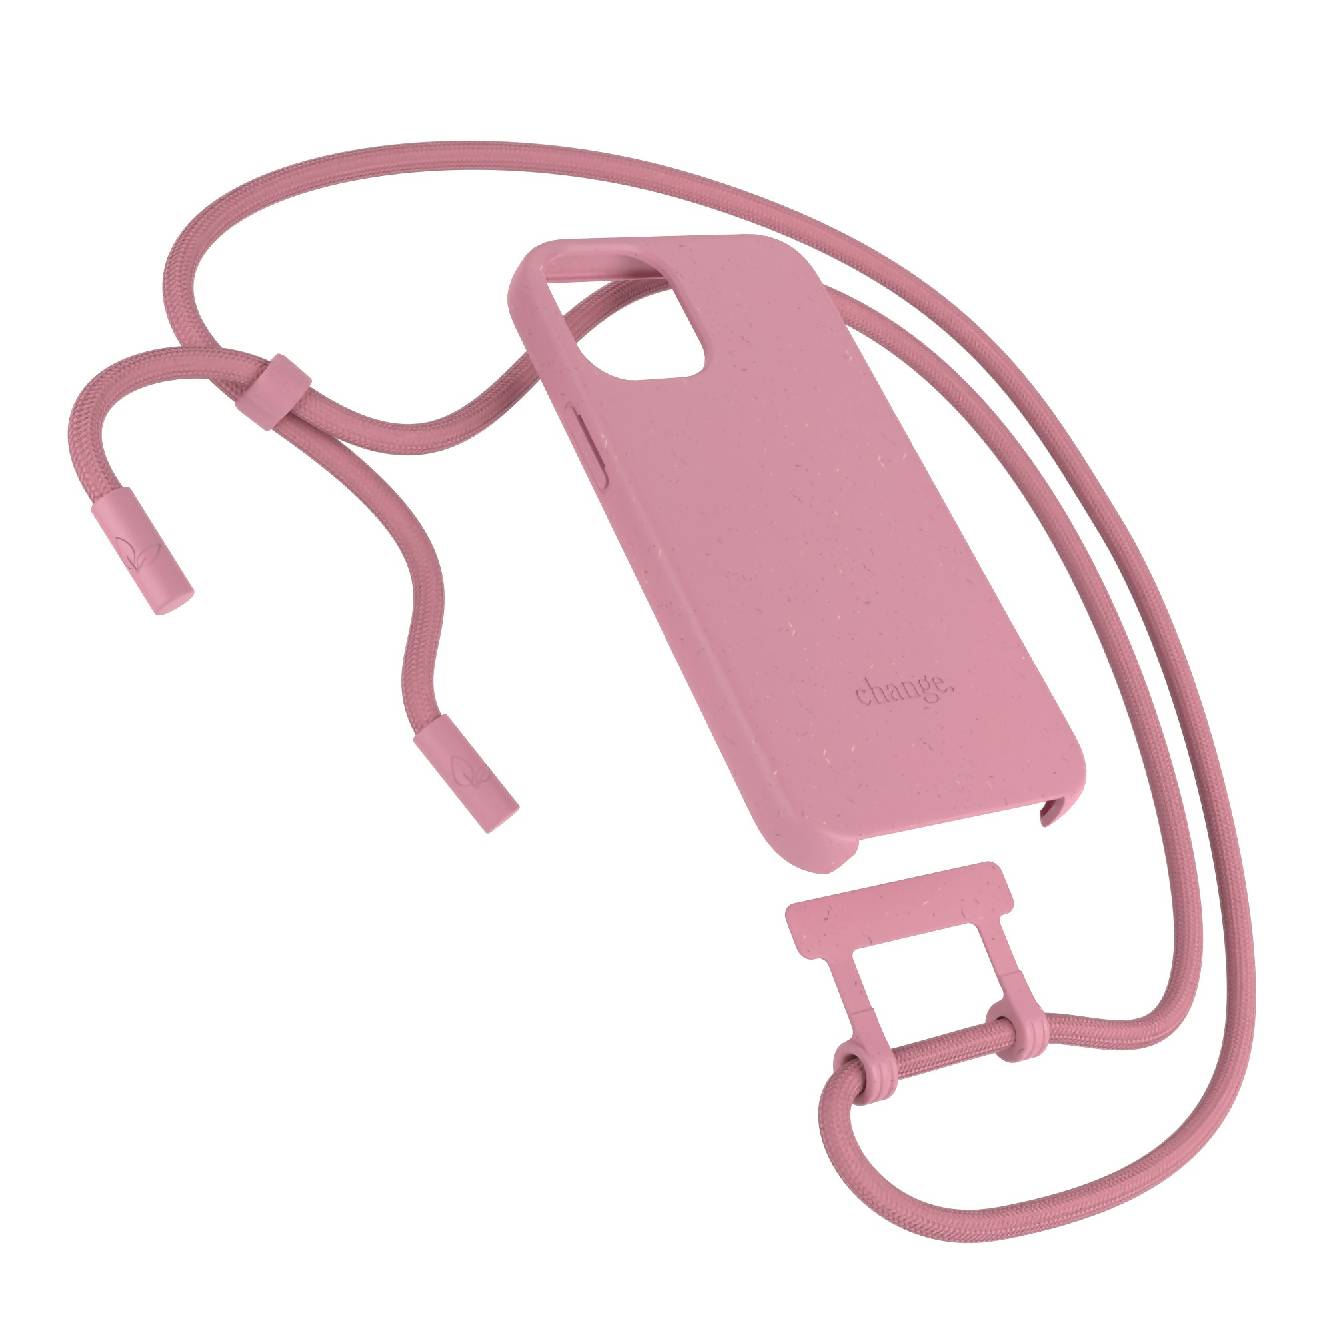 Change Case - iPhone Handykette abnehmbar & nachhaltig - Pink